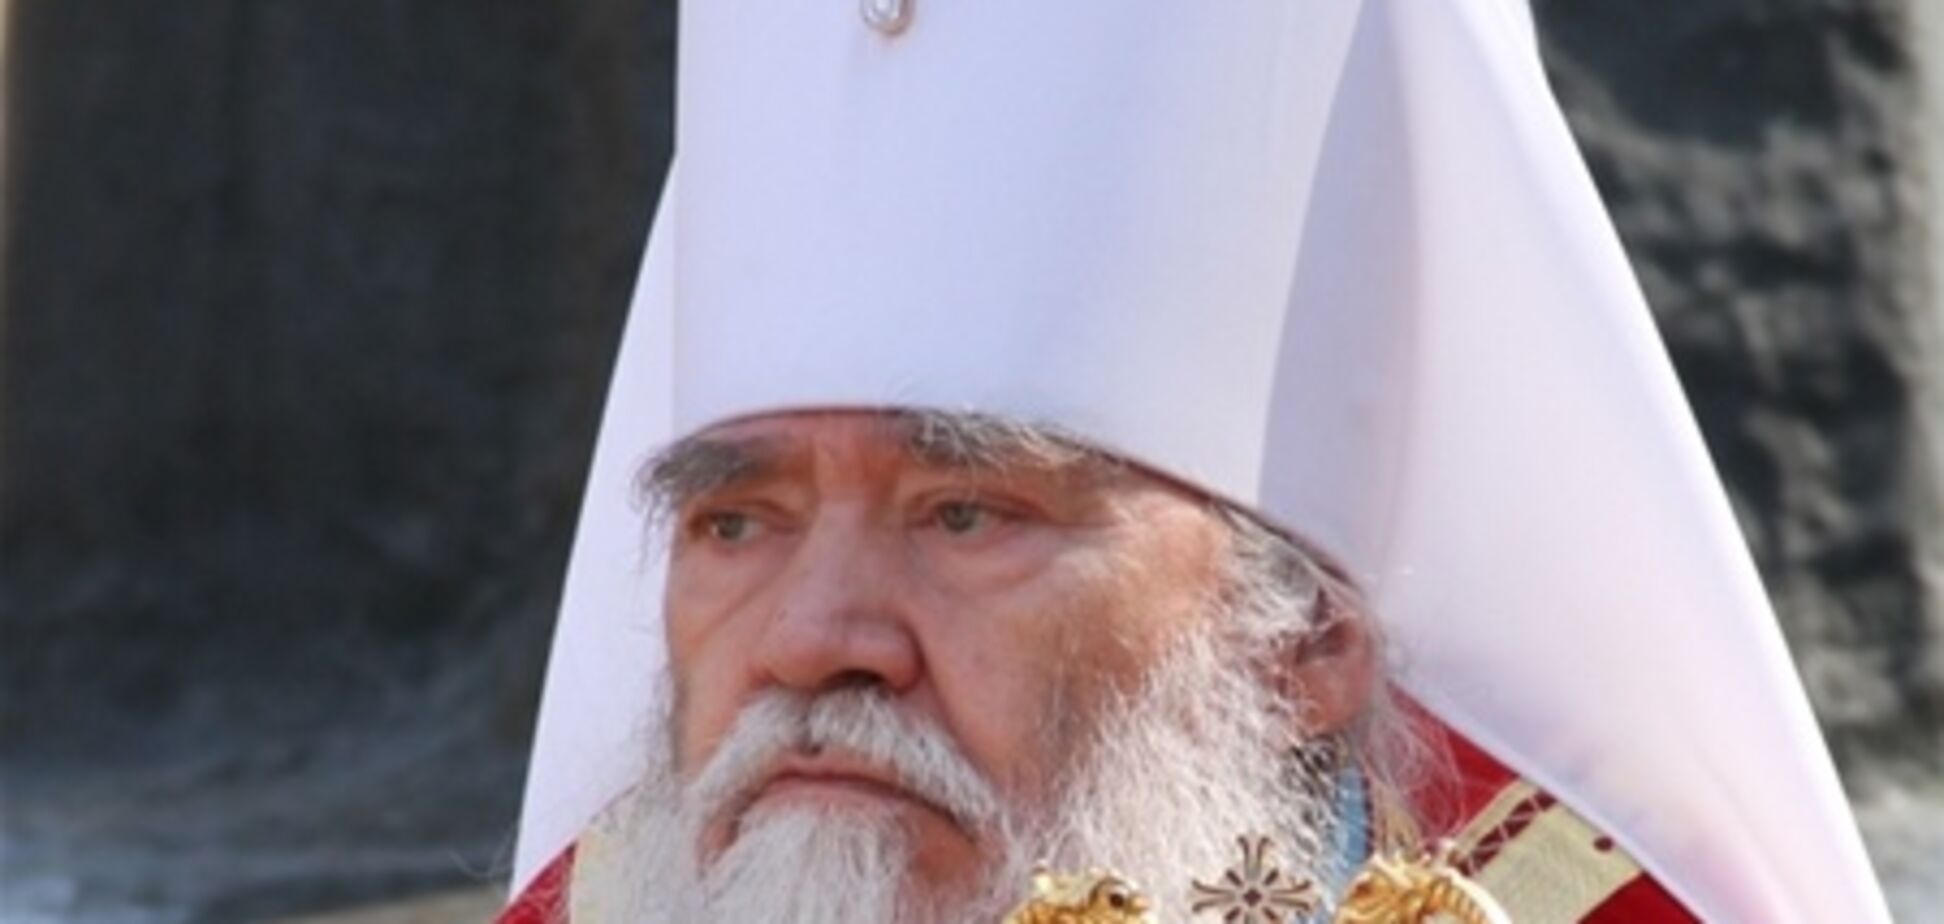 Синод УПЦ Московского патриархата отстранил управляющего Луганской епархией